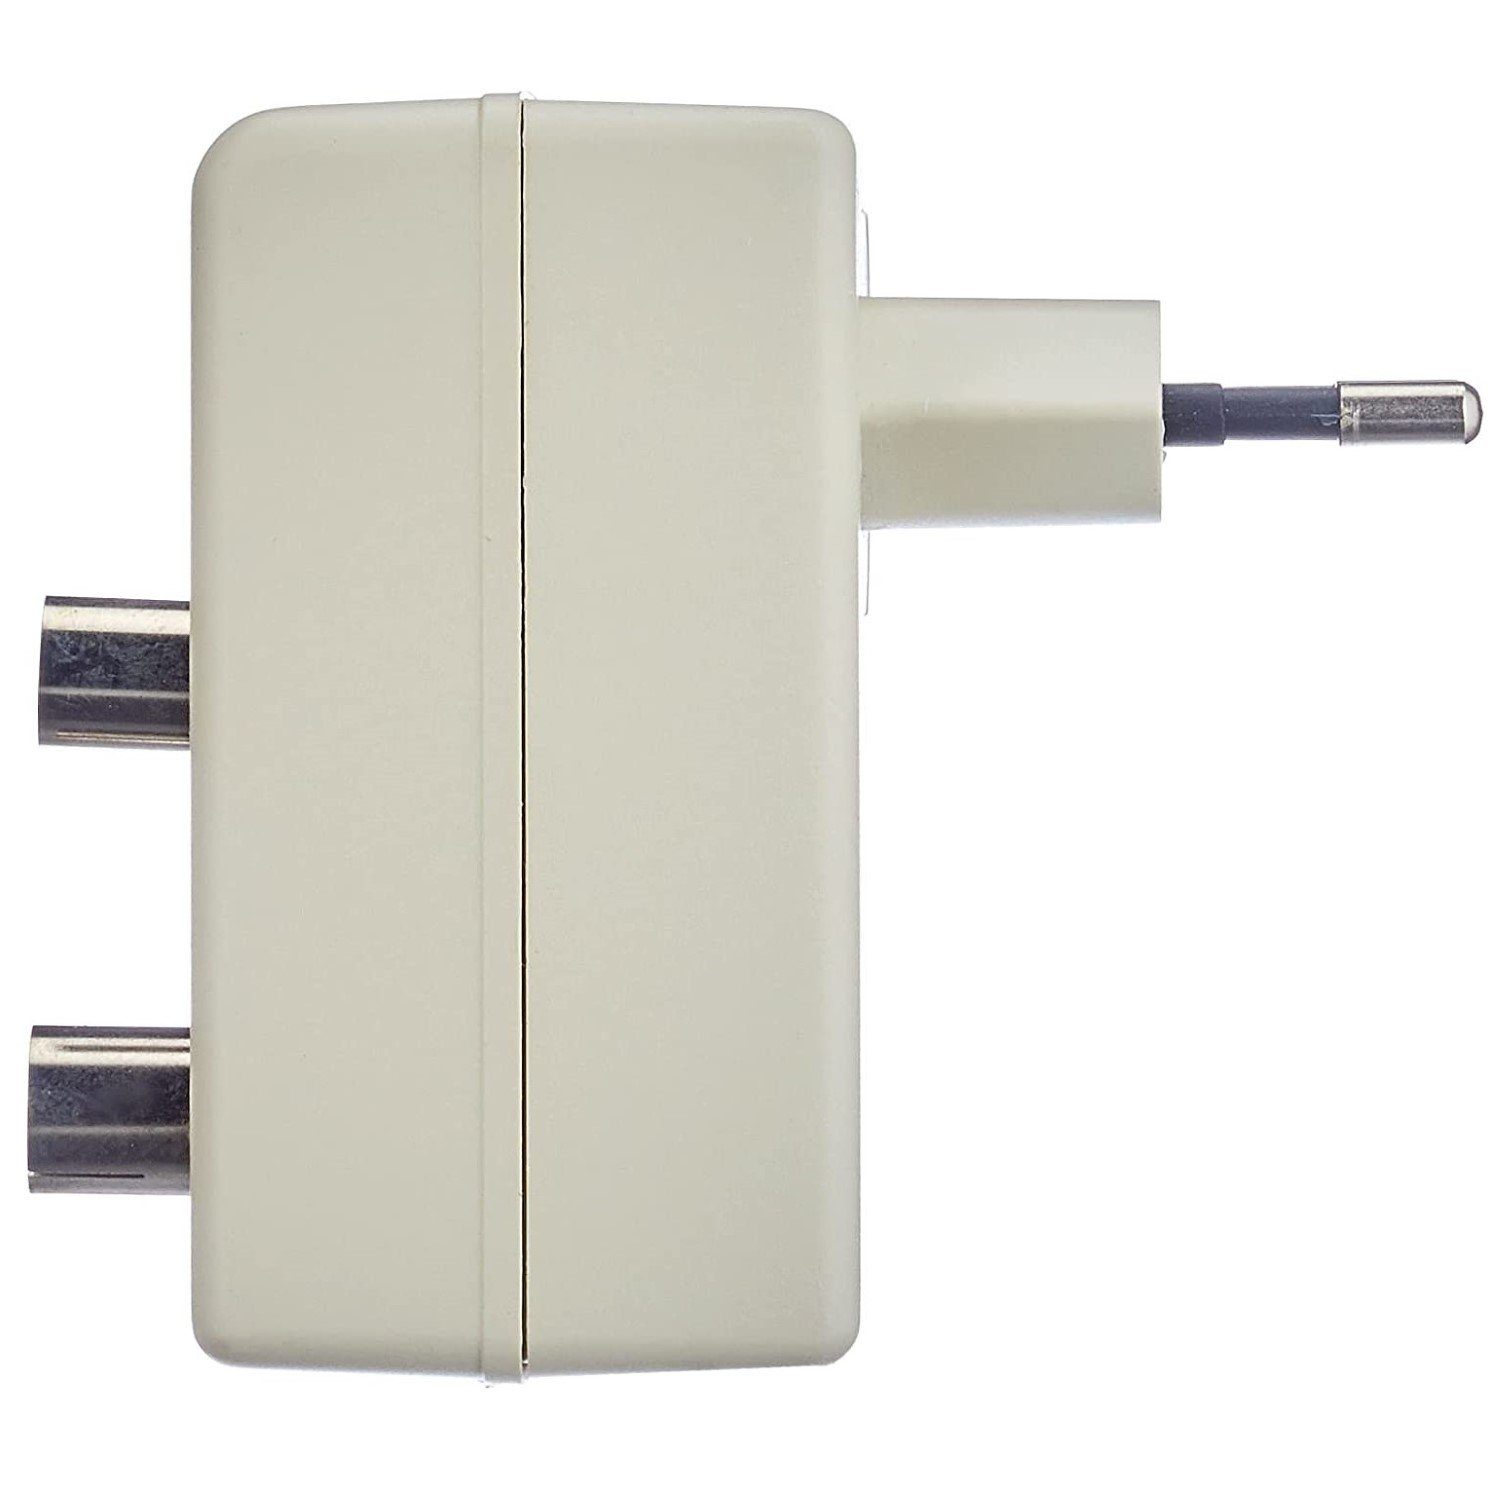 20dB Signalverstärker Audioverstärker Antennen-Verstärker Kabel für Digital 20 (Signal-Verstärker DVB-T2 dB) Verstärkung Hama